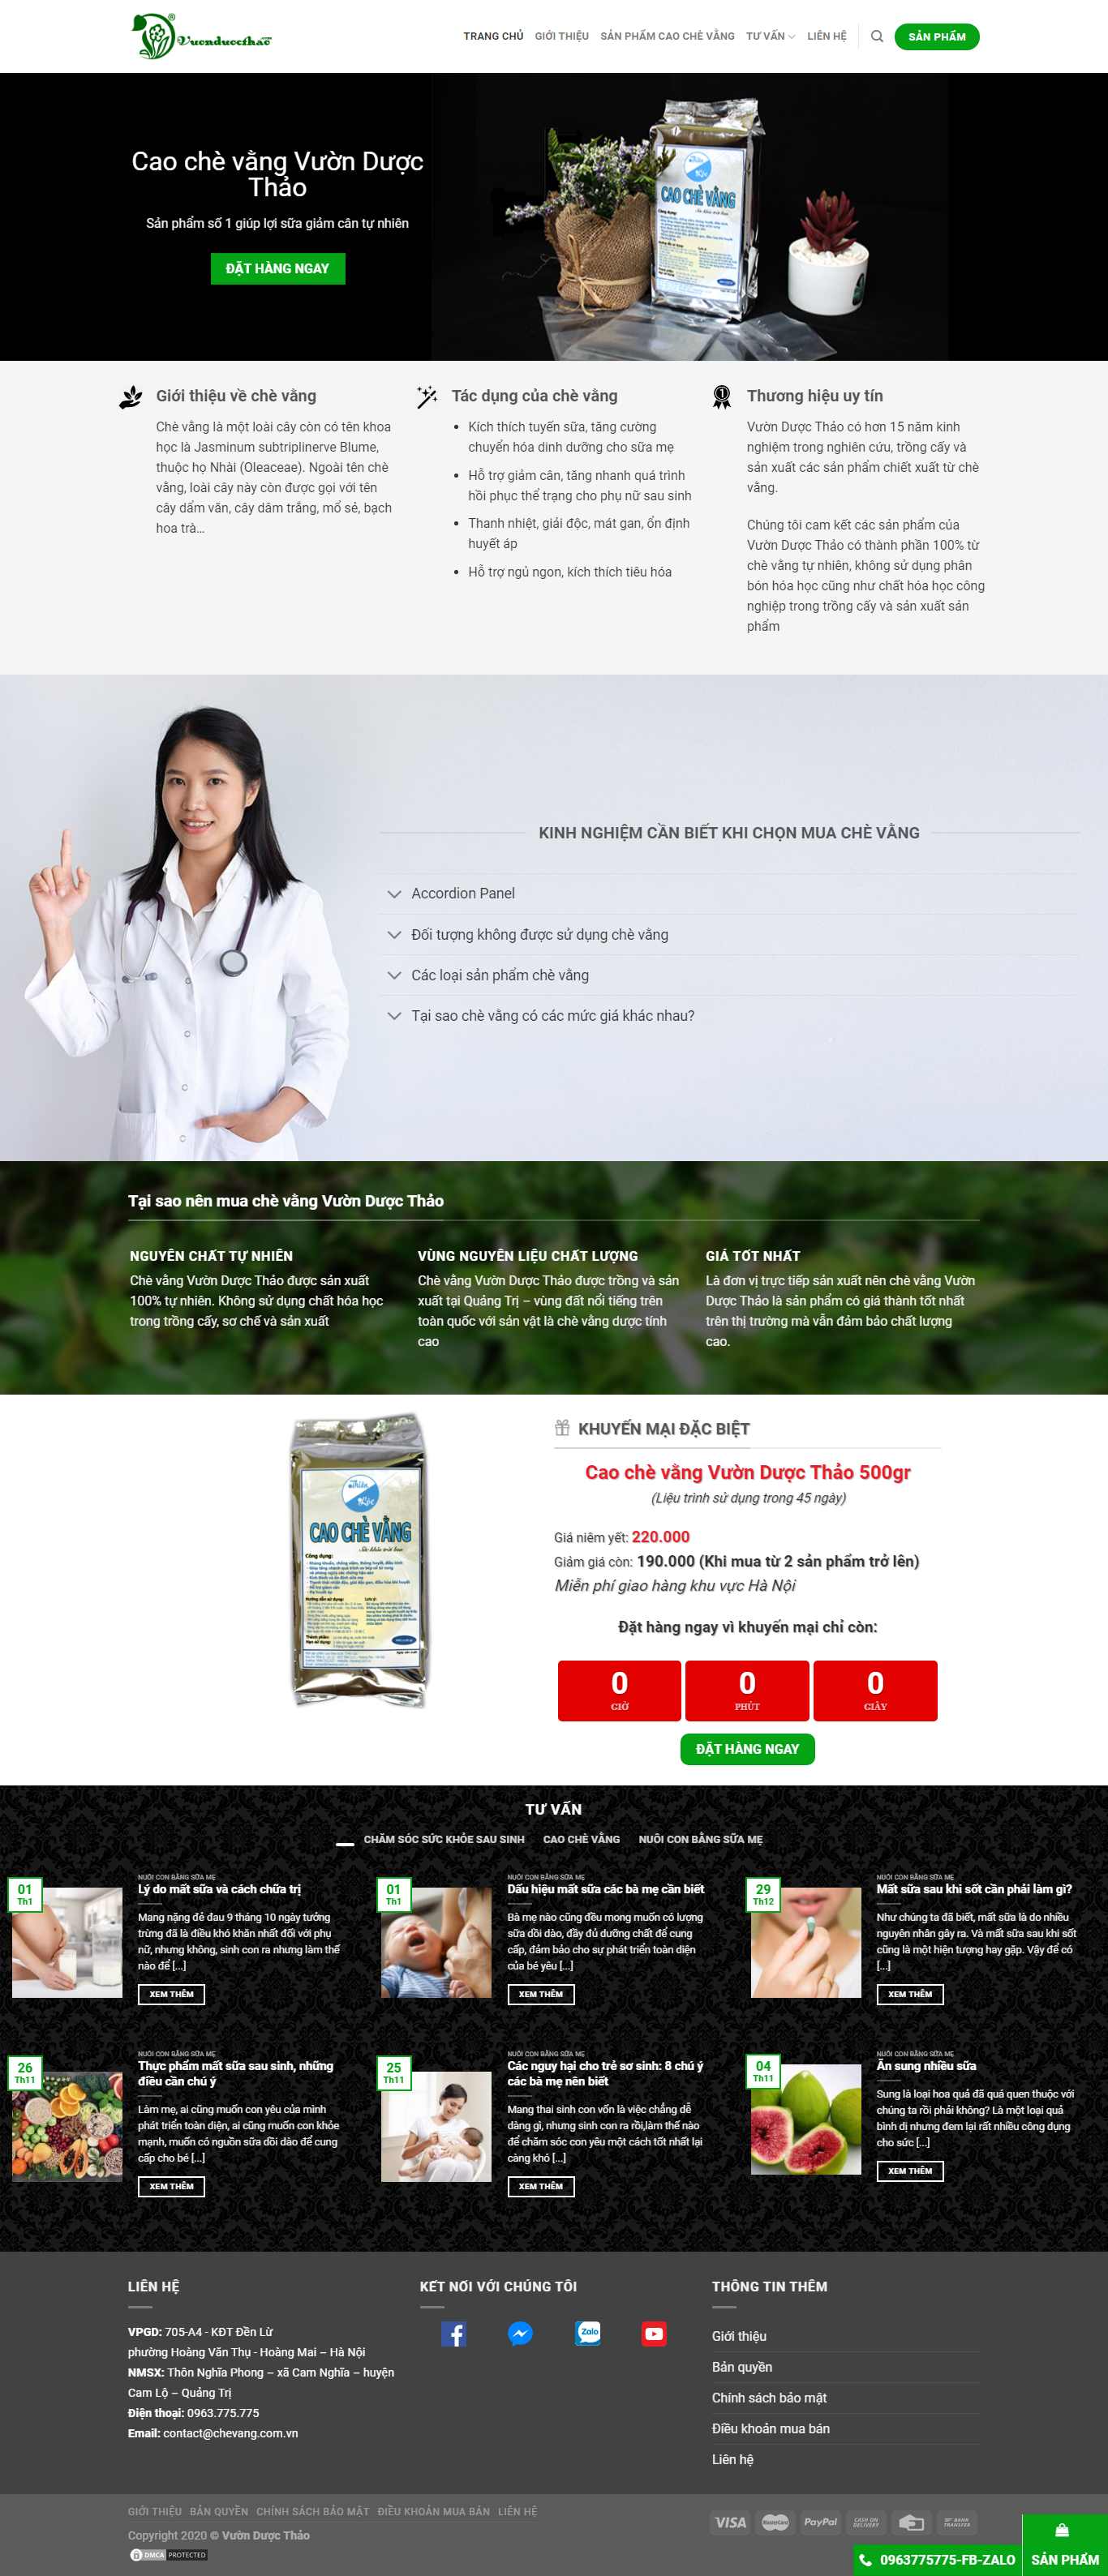 Thiết kế Website bán chè - chevang.com.vn